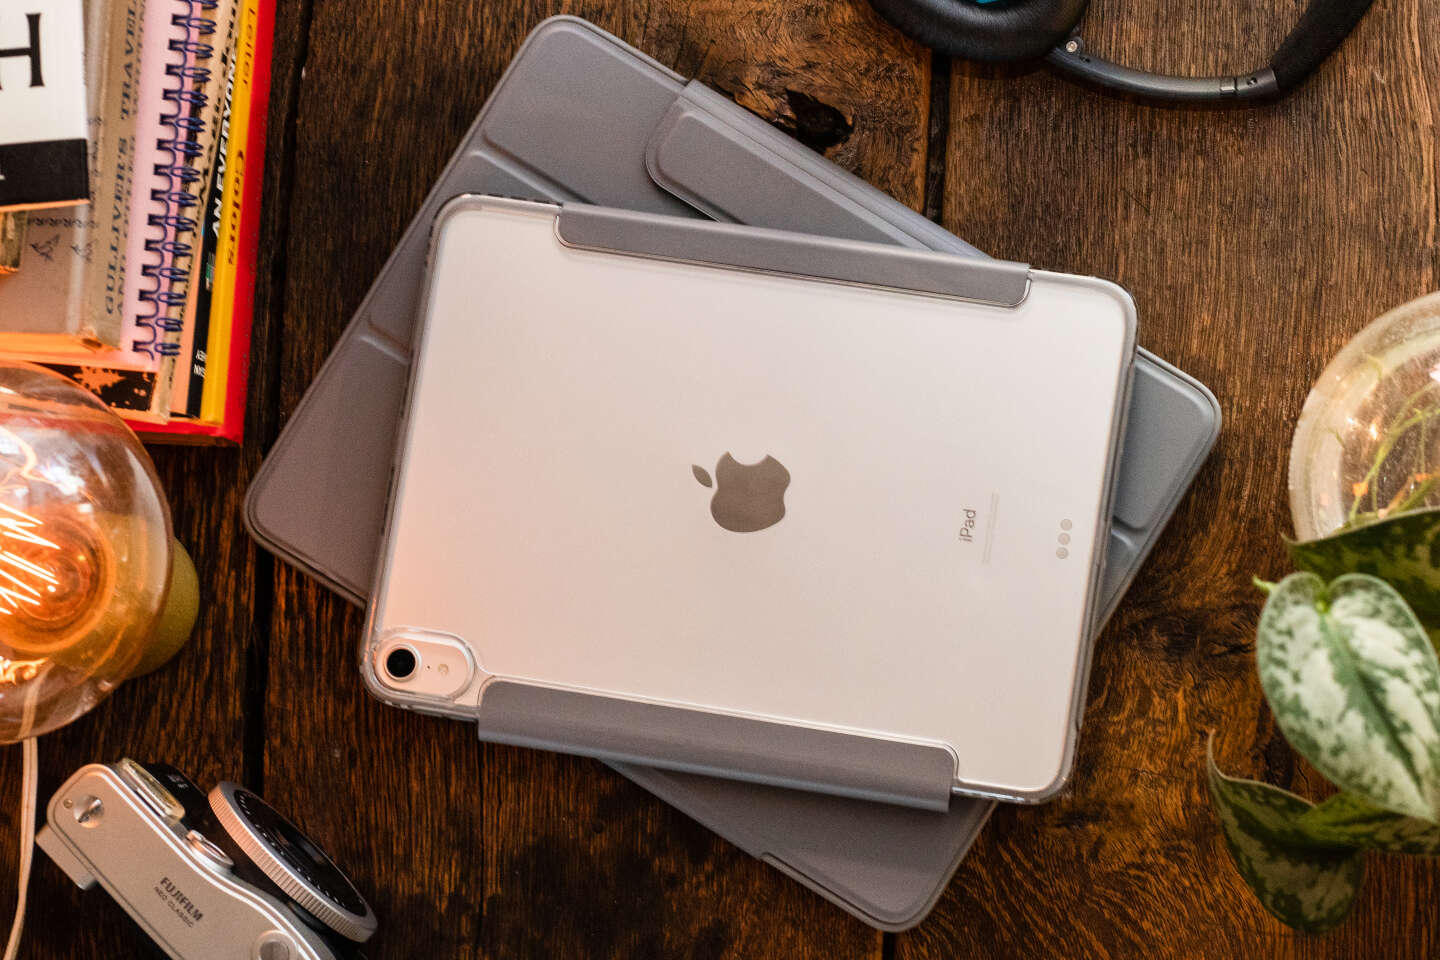 Coque de Protection renforcée - iPad Air 5, 4eme Gen et iPad Pro 11 3